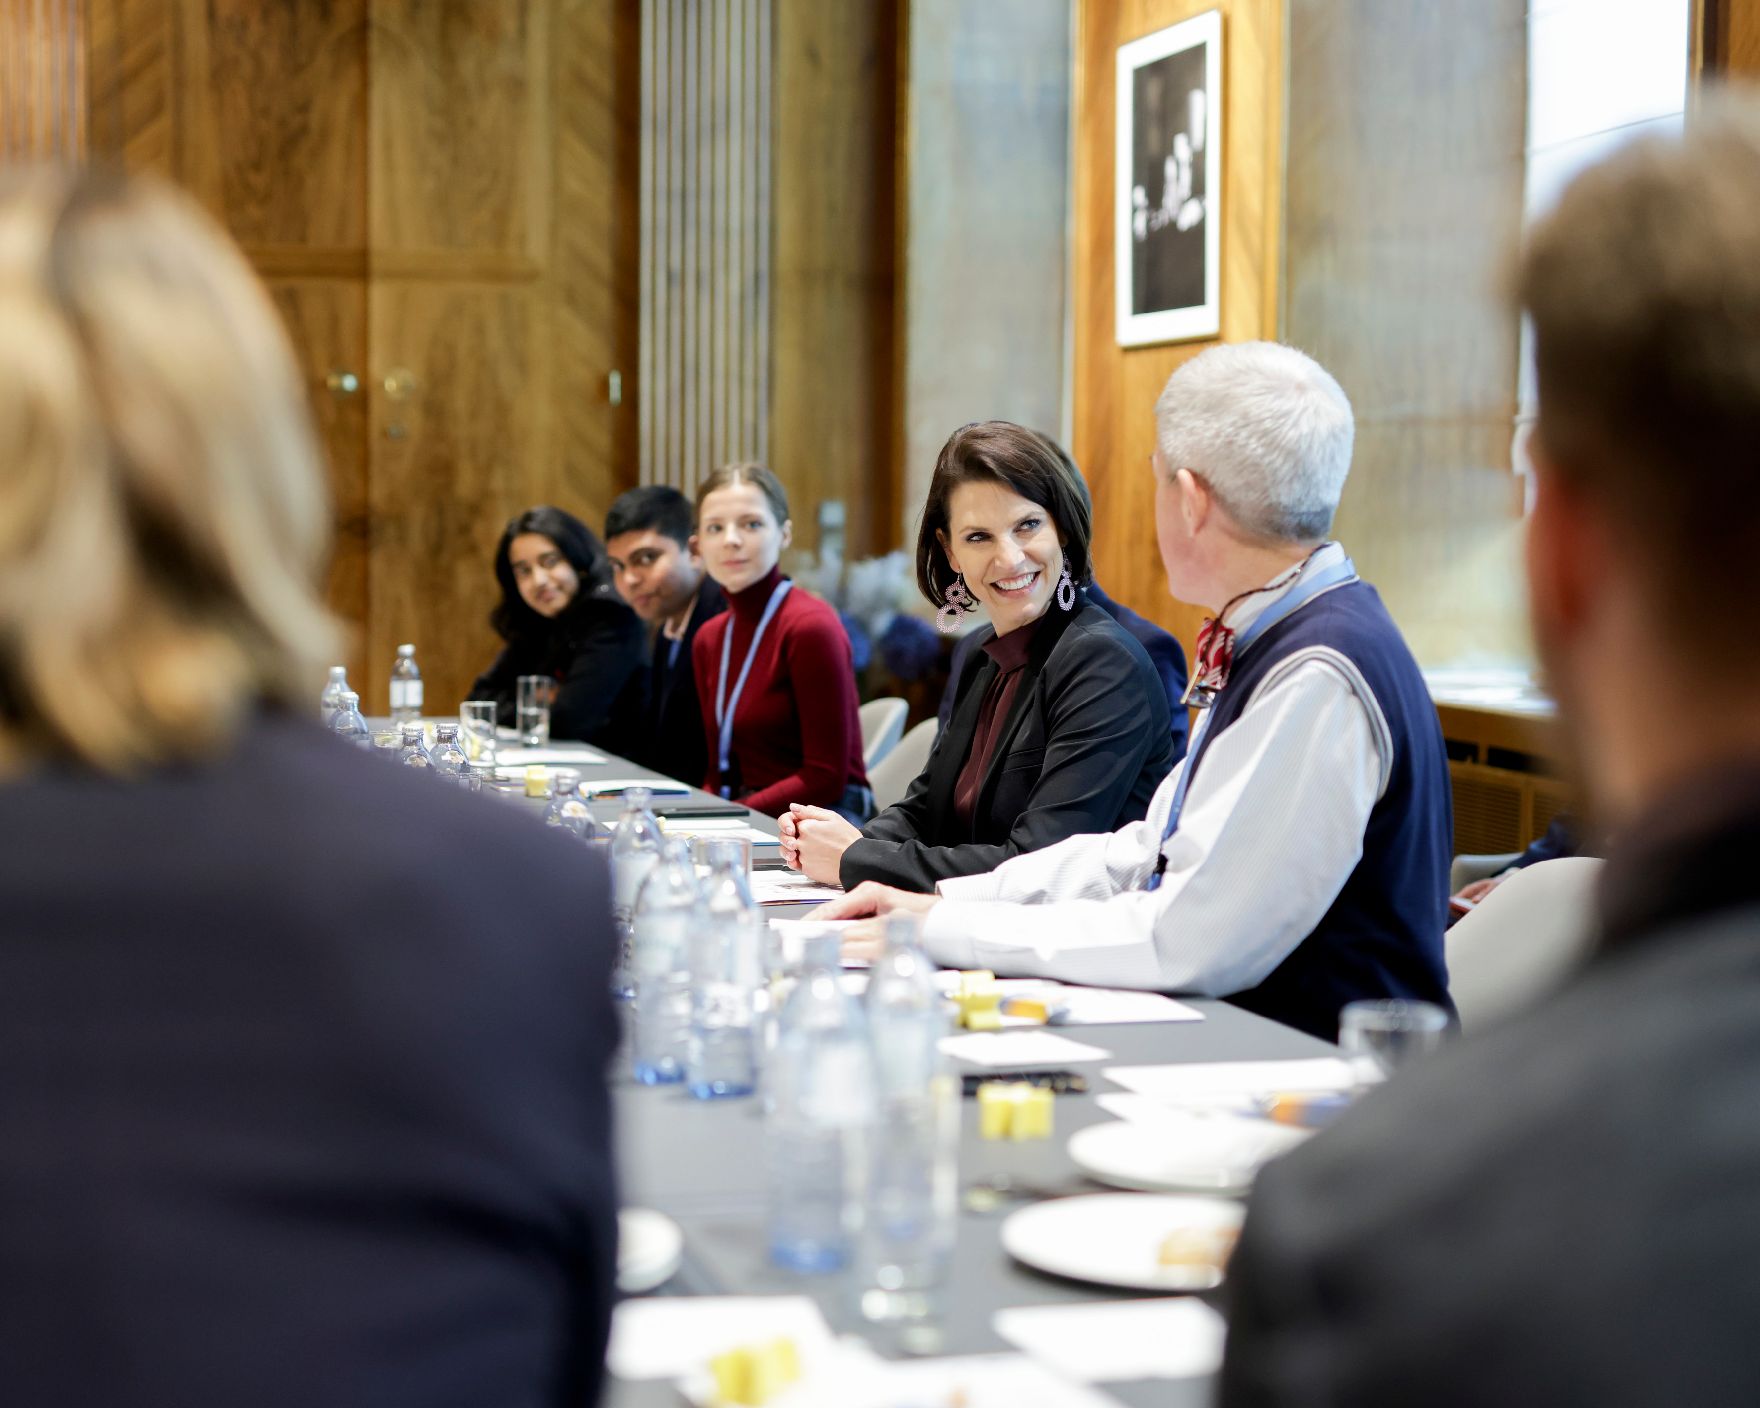 Am 26. Oktober 2021 empfing Bundesministerin Karoline Edtstadler (2.v.r.) eine Gruppe von Schülerinnen und Schülern der Diplomatischen Akademie zu einem Gespräch.